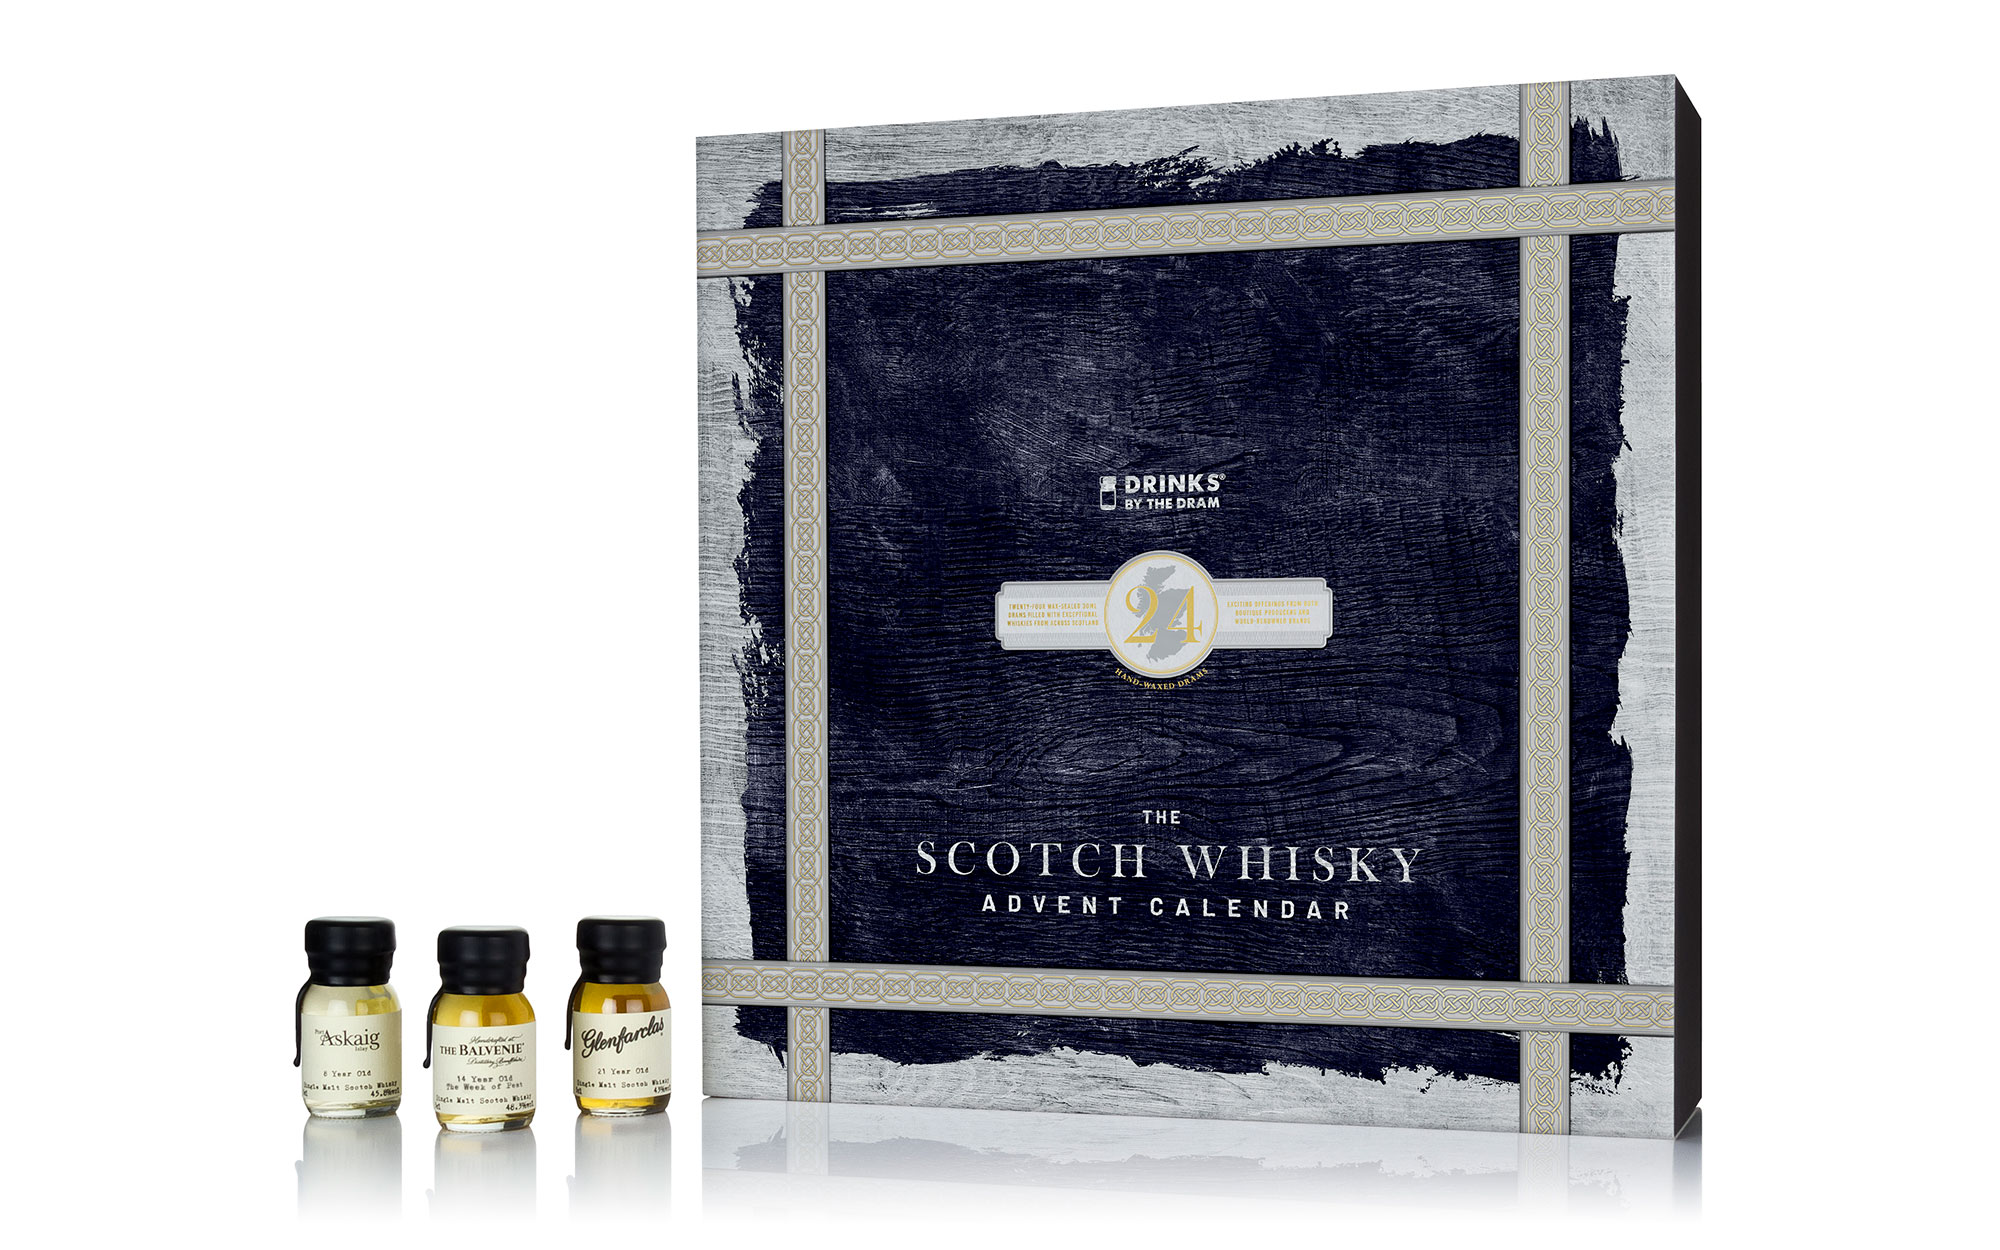 The Scotch Whisky Advent Calendar